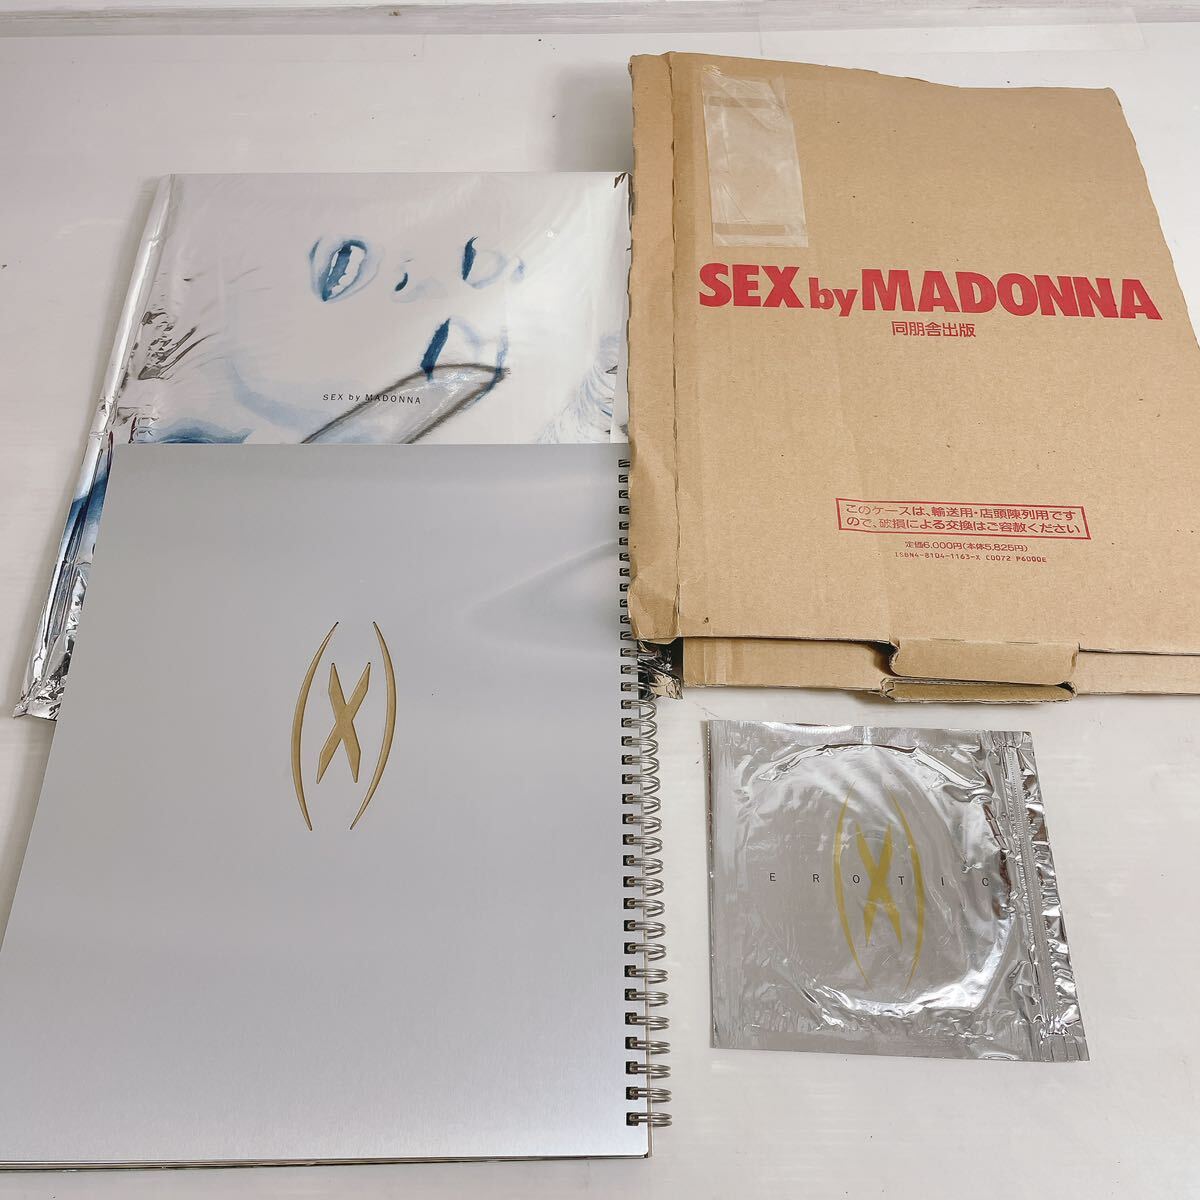 ◆マドンナ写真集 SEX by MADONNA マドンナ 同朋舎出版 アルミ外装 CD付◆I2-Kの画像1